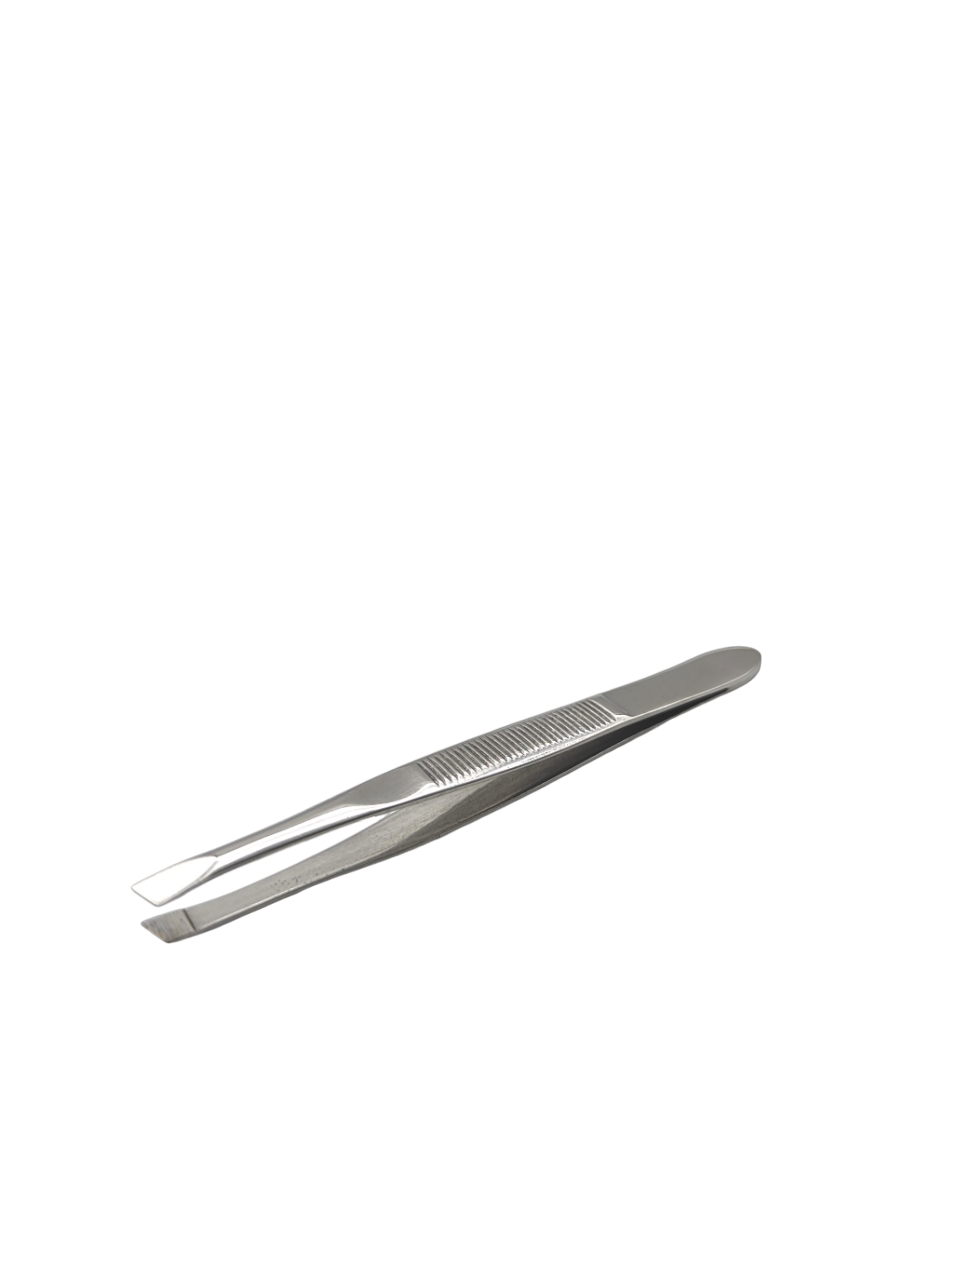 lucas пинцет профессиональный для бровей с ручной заточкой со скошенными кончиками Пинцет для бровей BSPro-1 серебристый